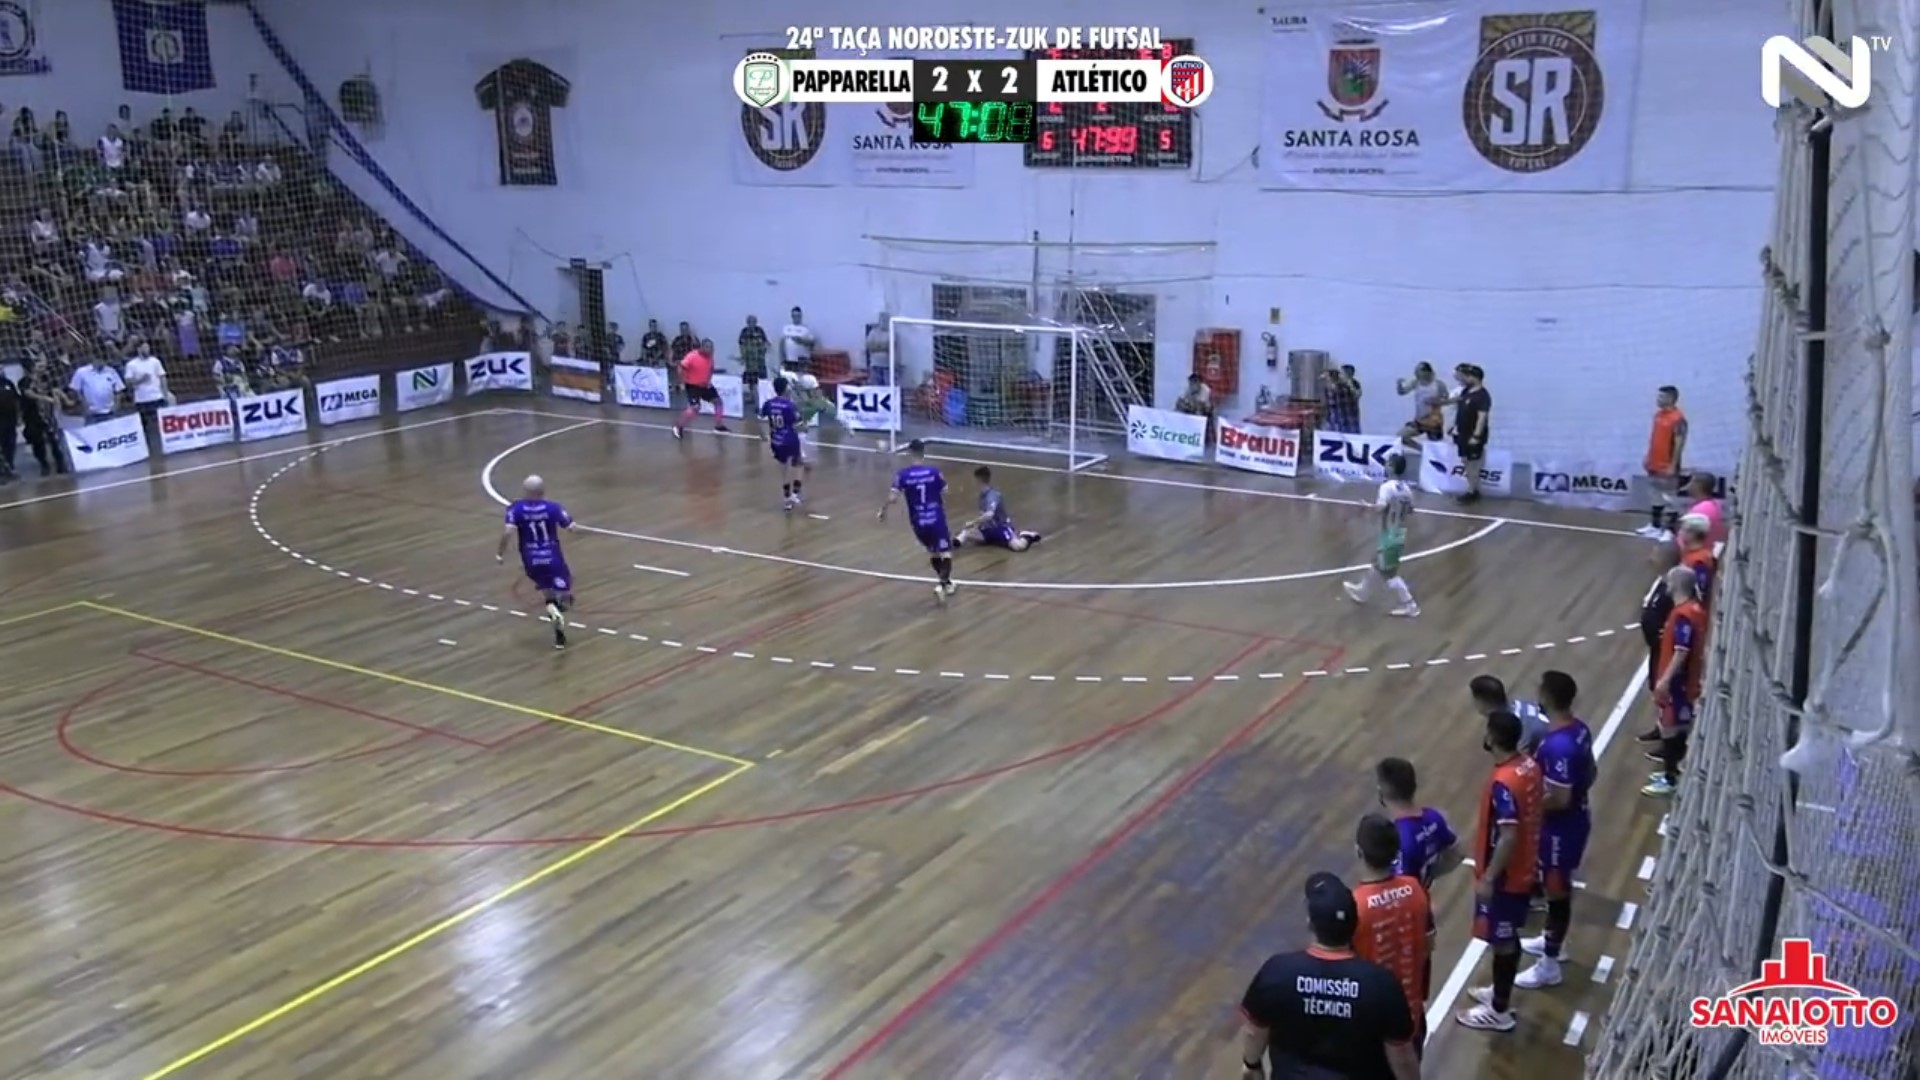 Veja os gols de Papparella 3 x 2 Atlético HFC pela Taça Noroeste Zuk de Futsal